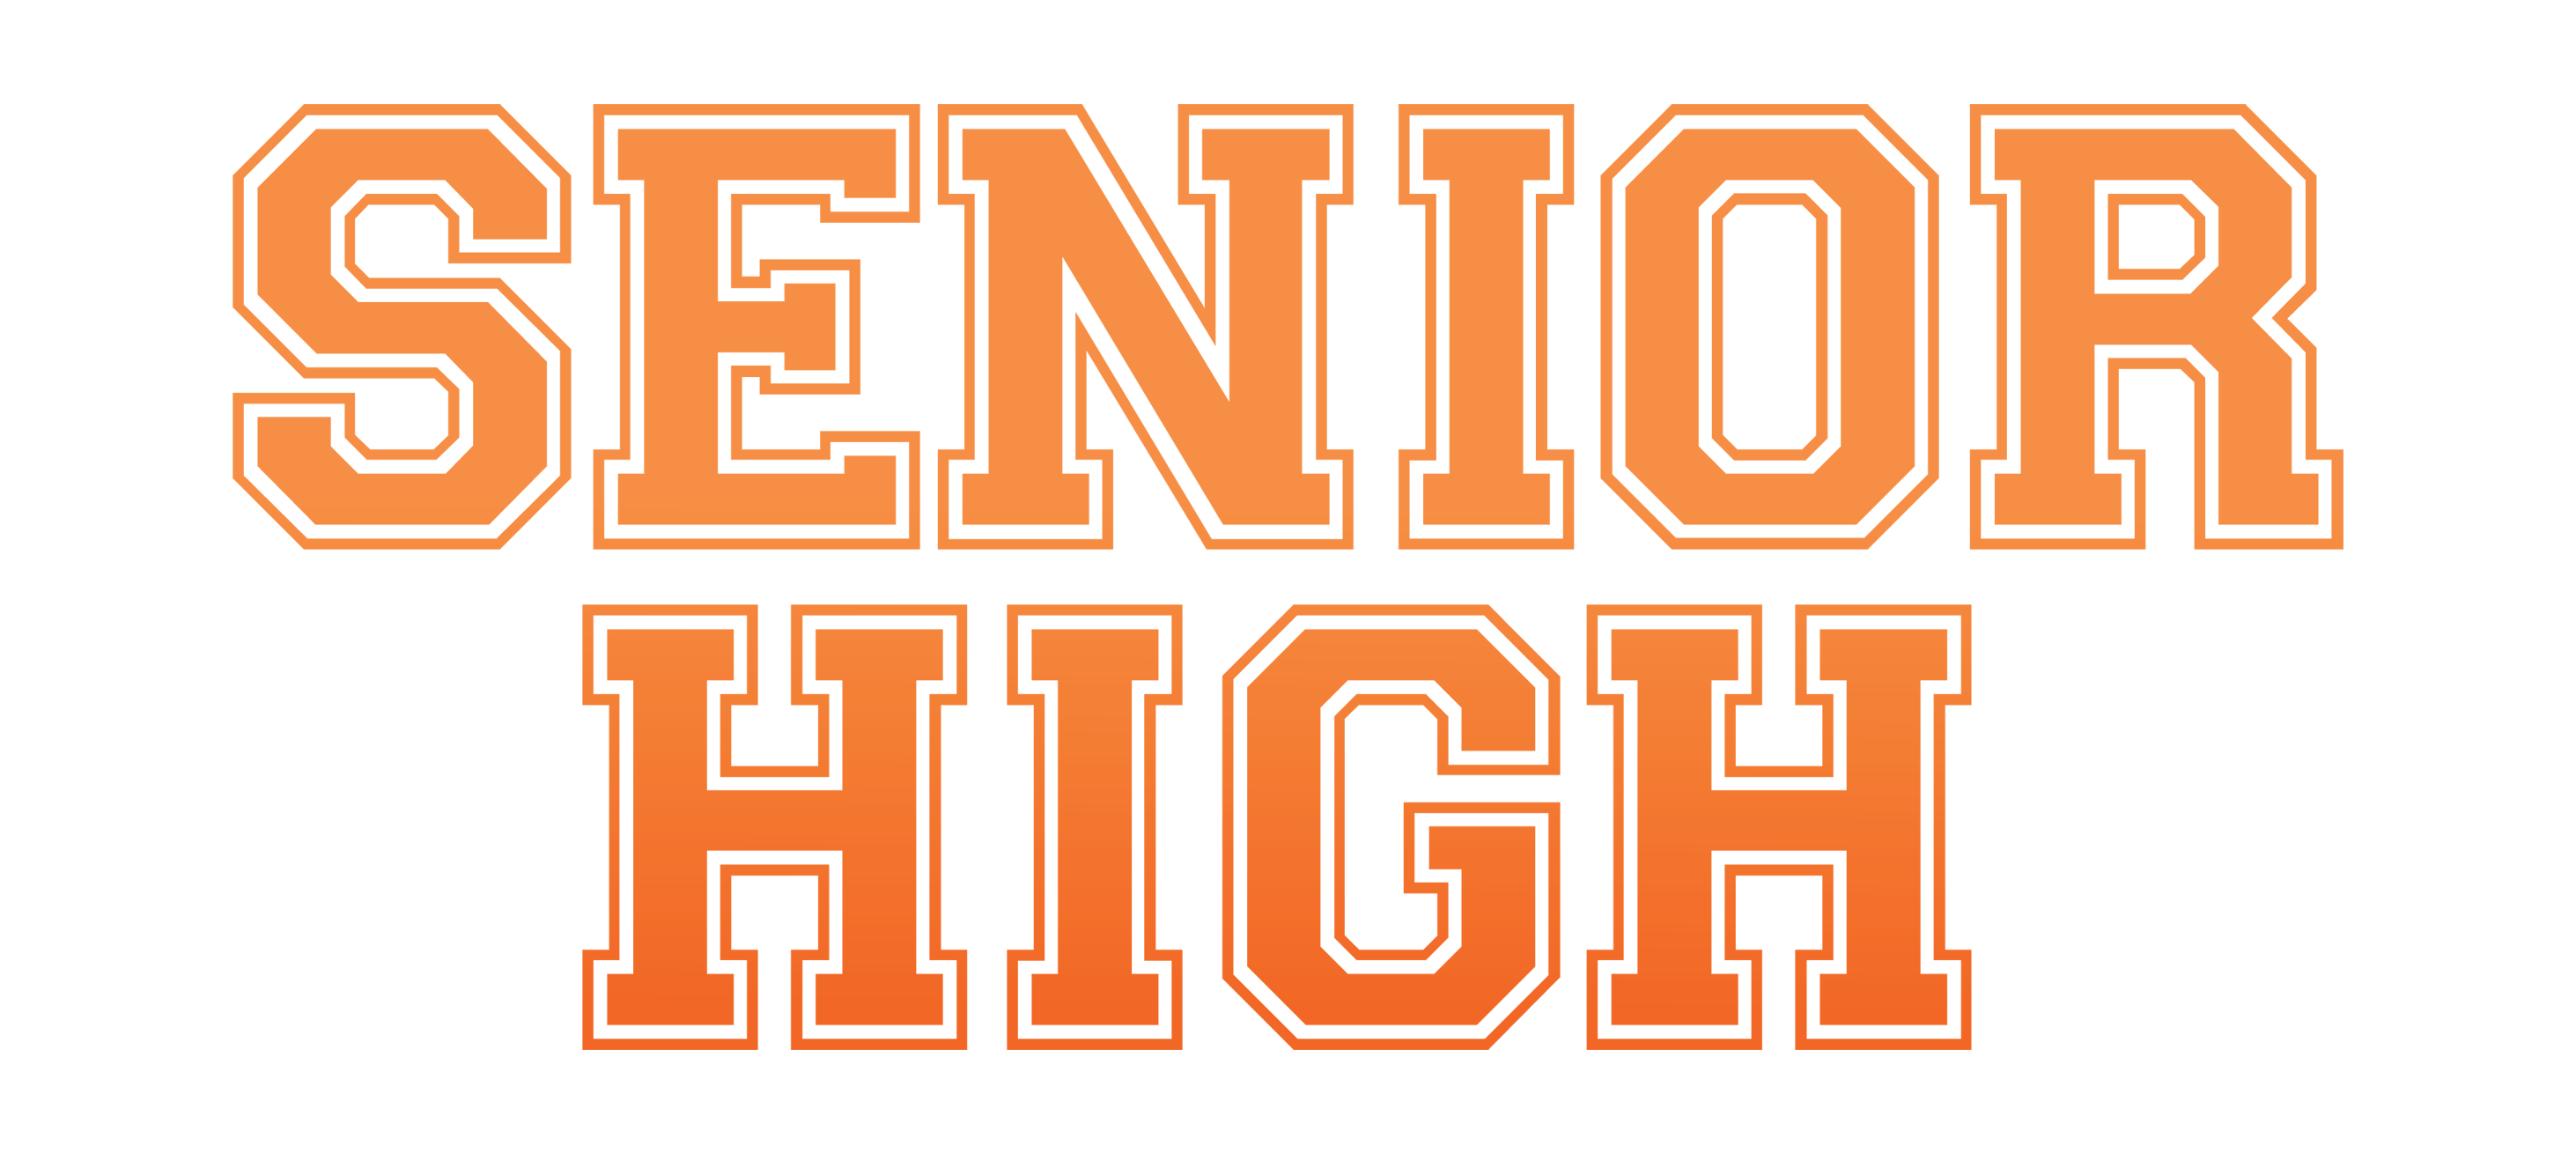 Senior high logo